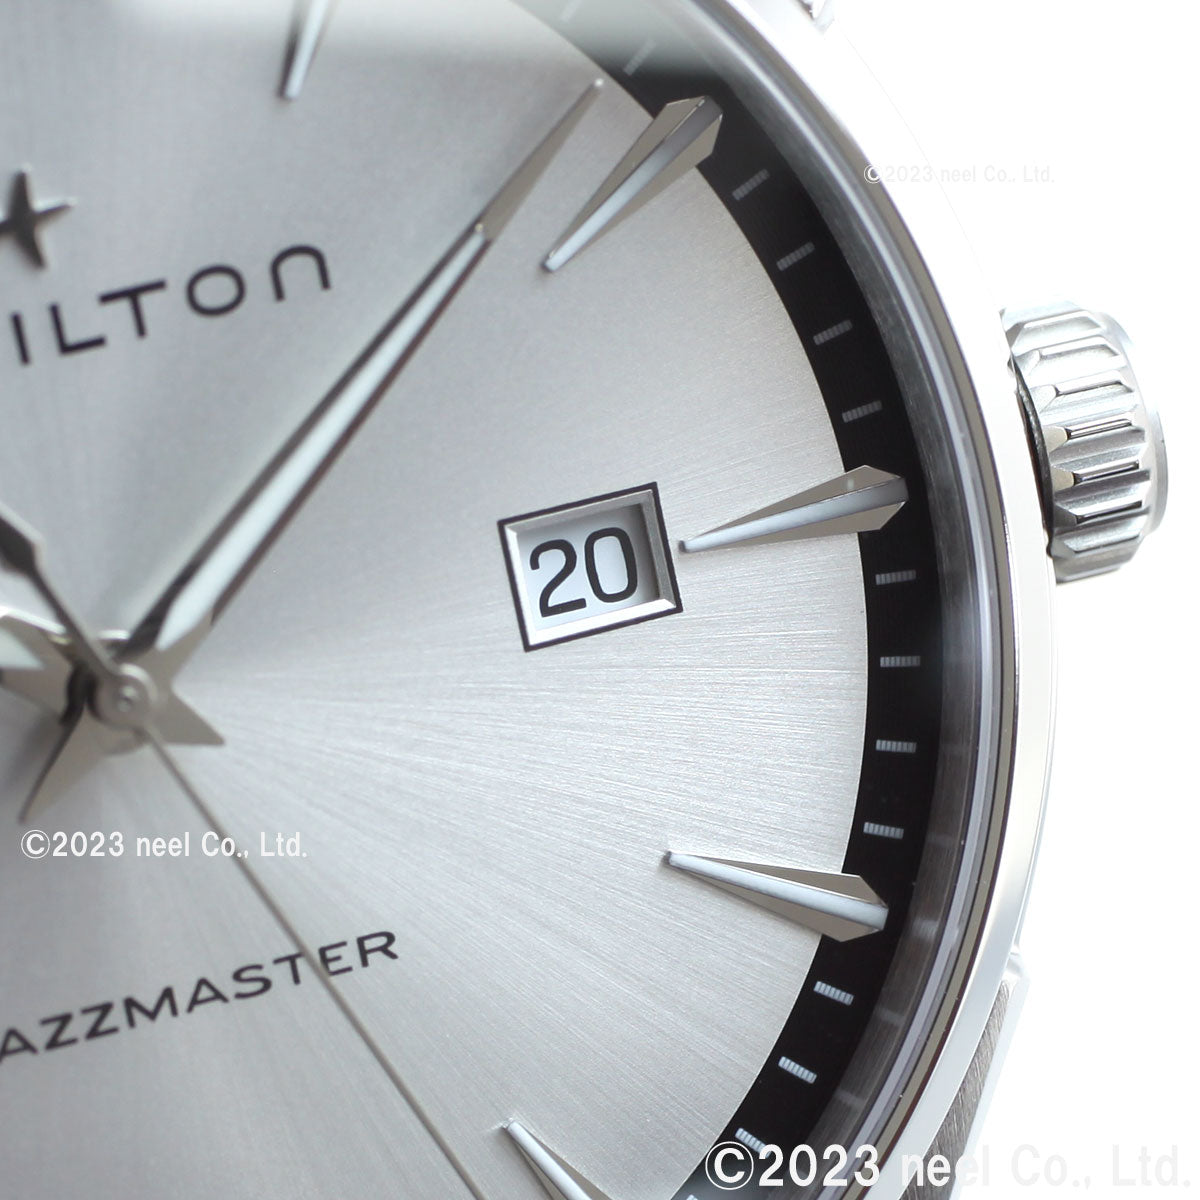 【正規品】ハミルトン HAMILTON ジャズマスター ジェント クォーツ H32451151 腕時計 メンズ JAZZMASTER GENT QUARTZ【36回無金利ローン】